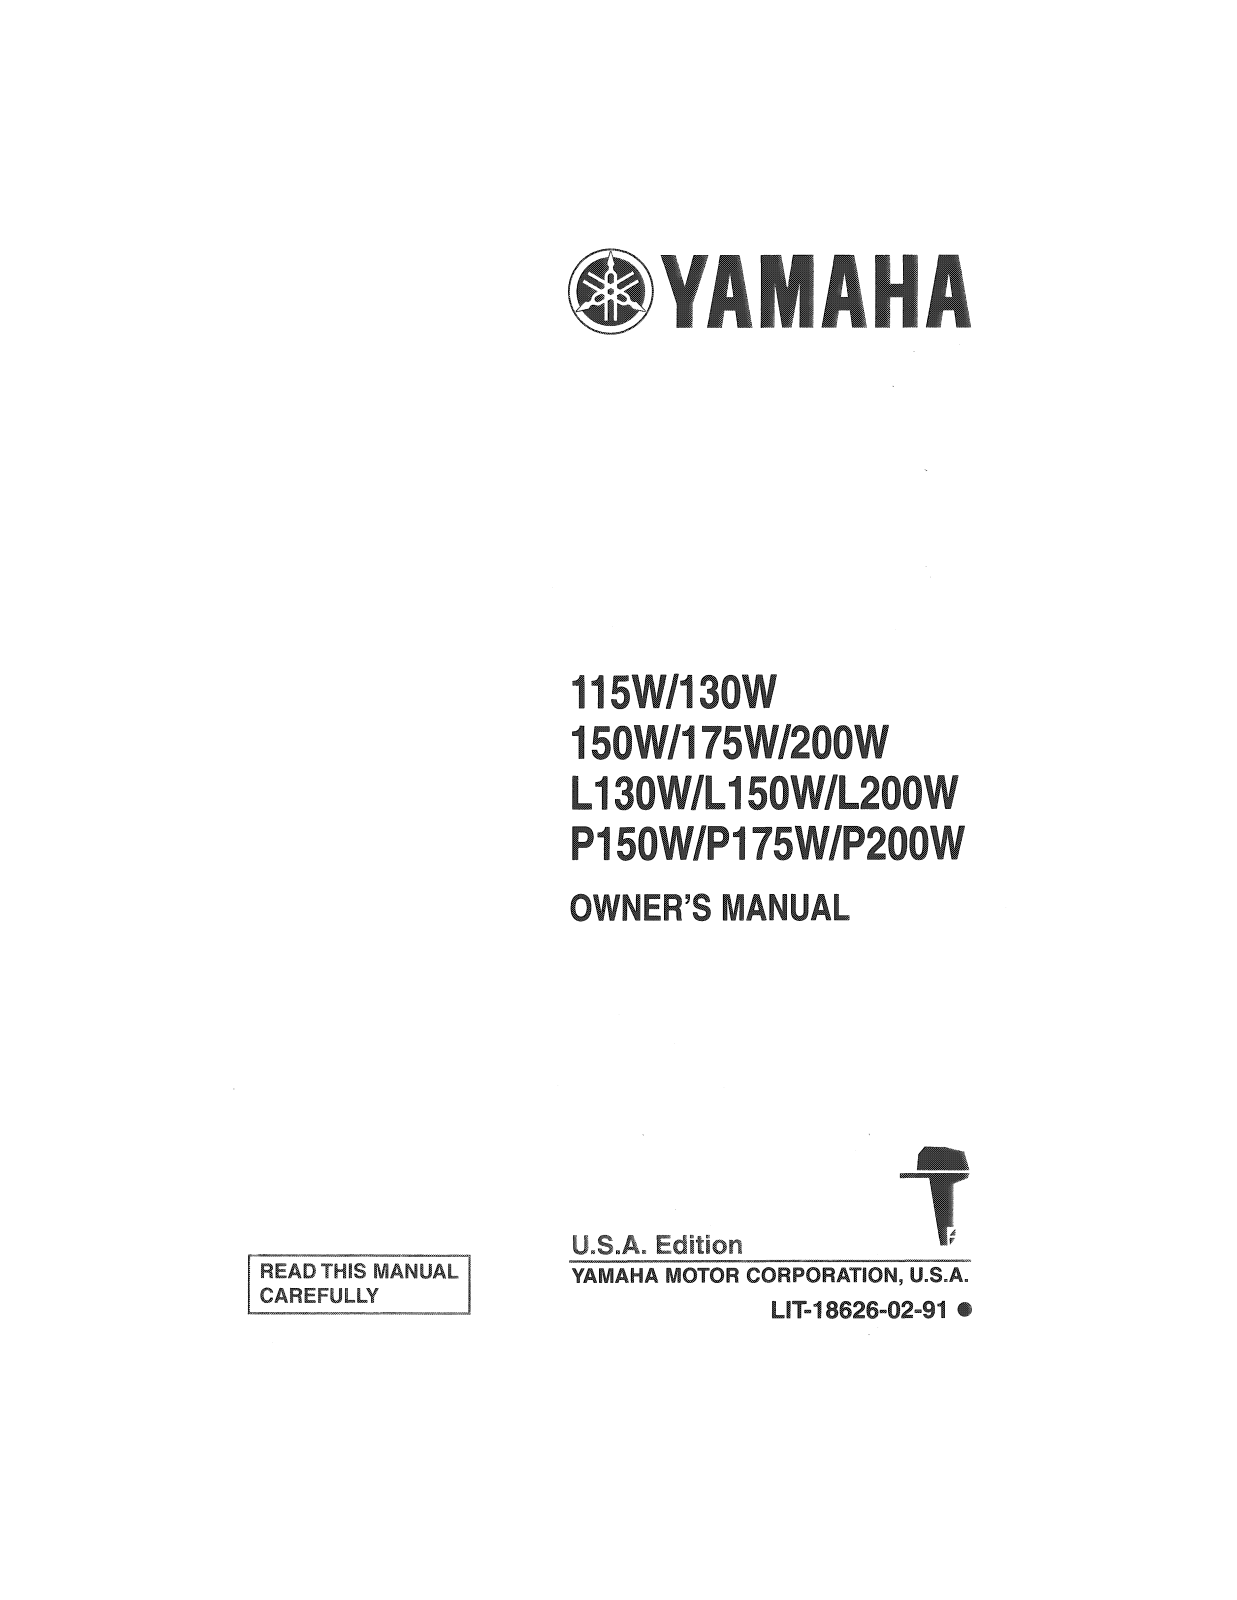 Yamaha 115W, 130W, 150W, 175W, 200W Manual